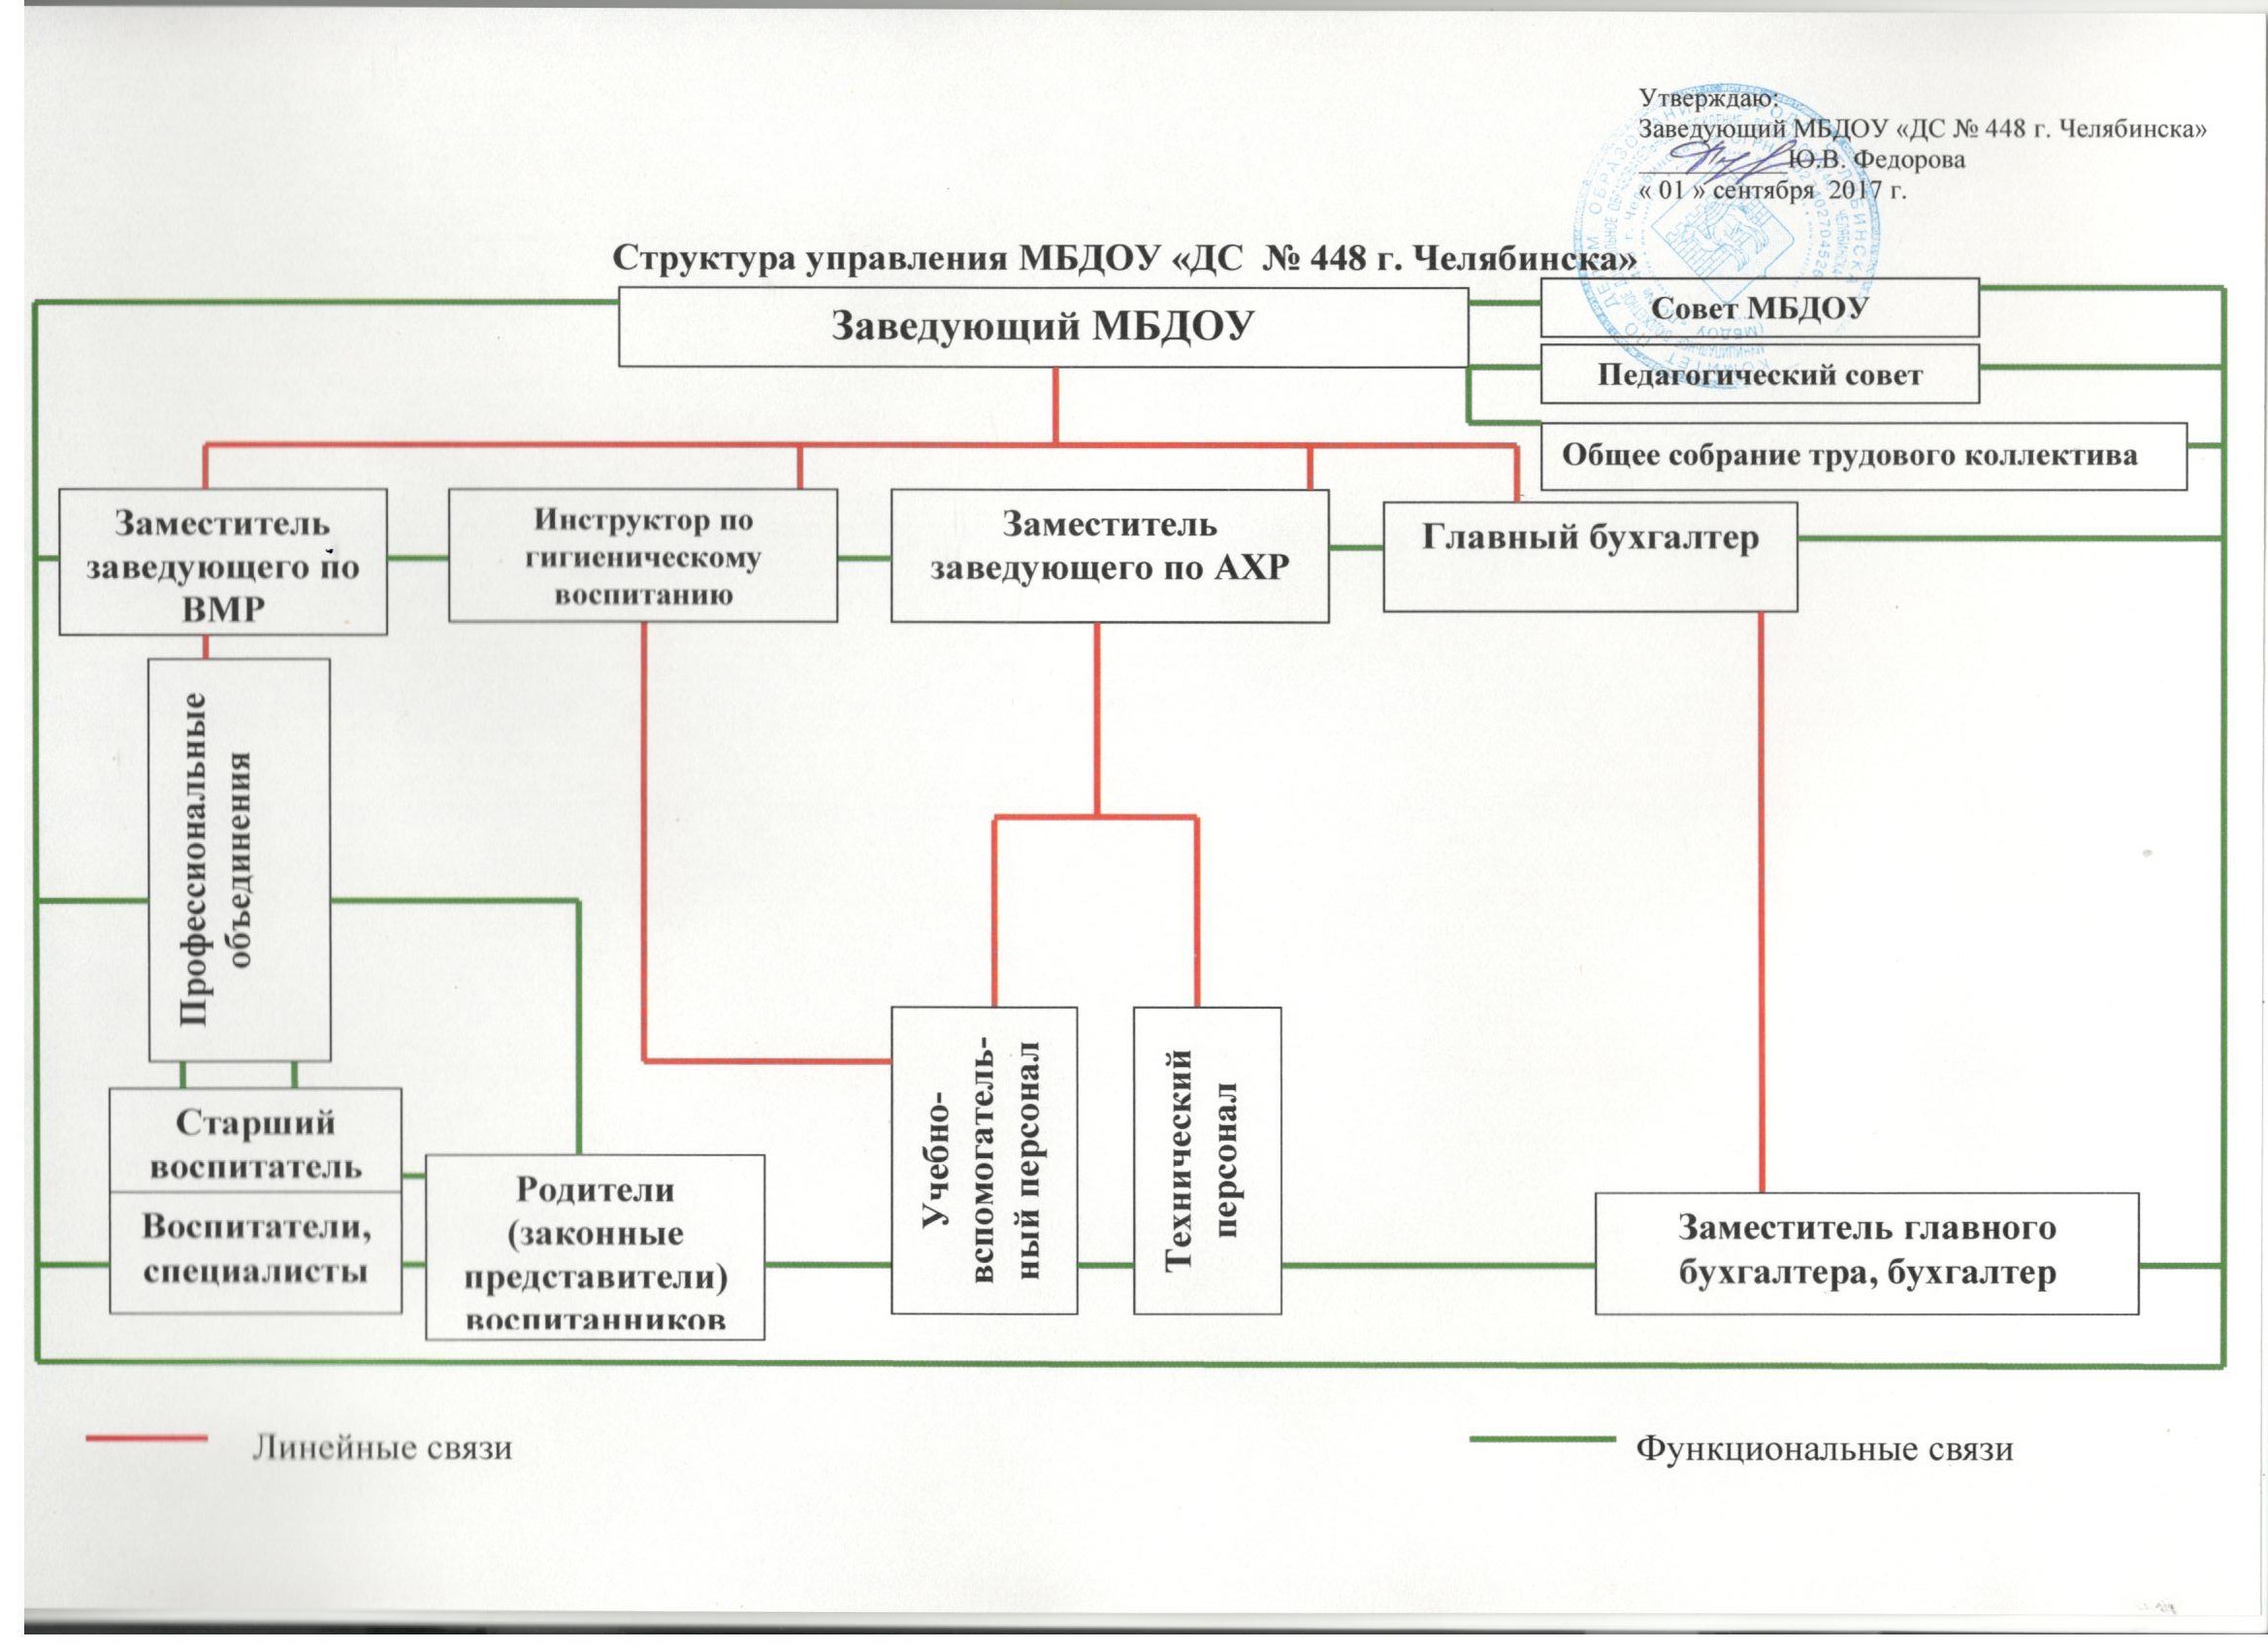 Структура управления МБДОУ № 448